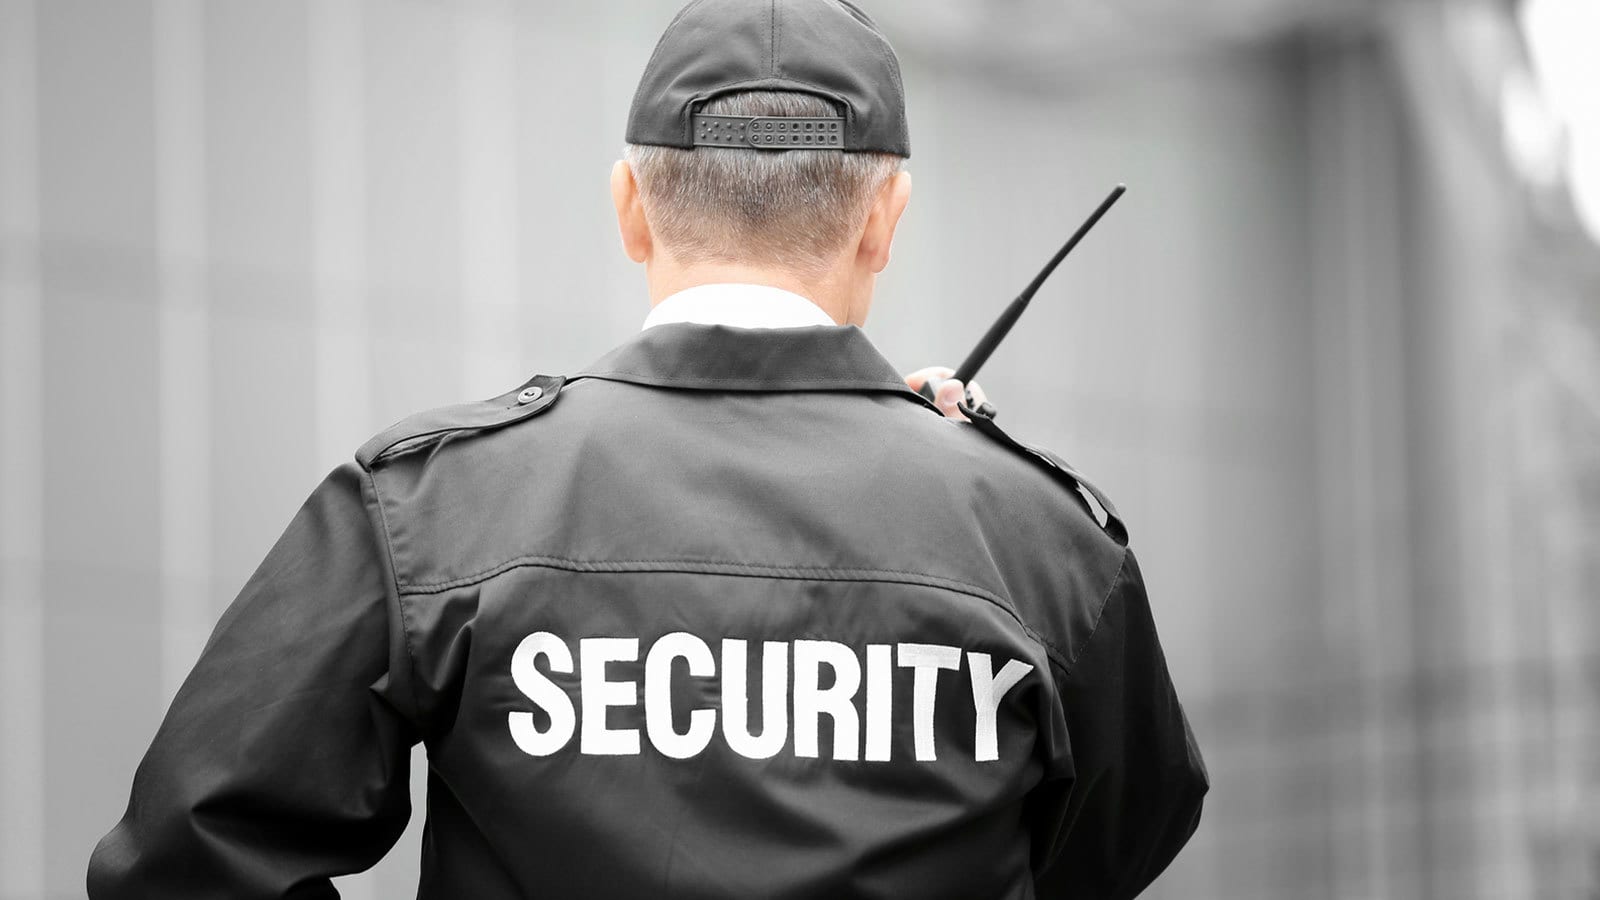 شركة TEAM 4 Security تطلب أفراد امن ولا يشترط مؤهل برواتب مجزية